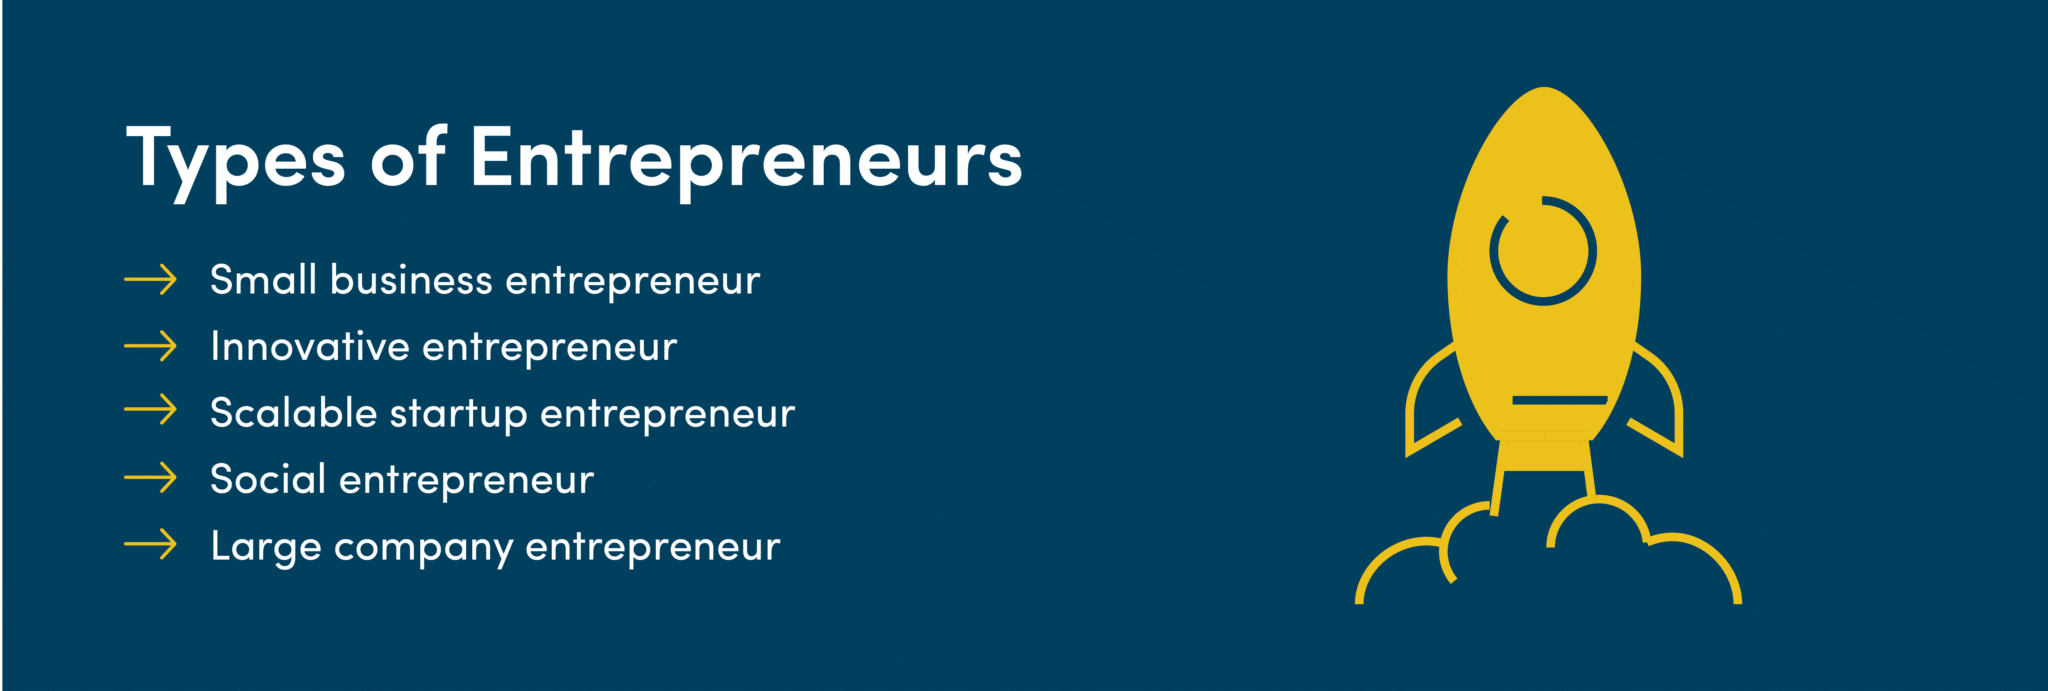 Types of entrepreneurs